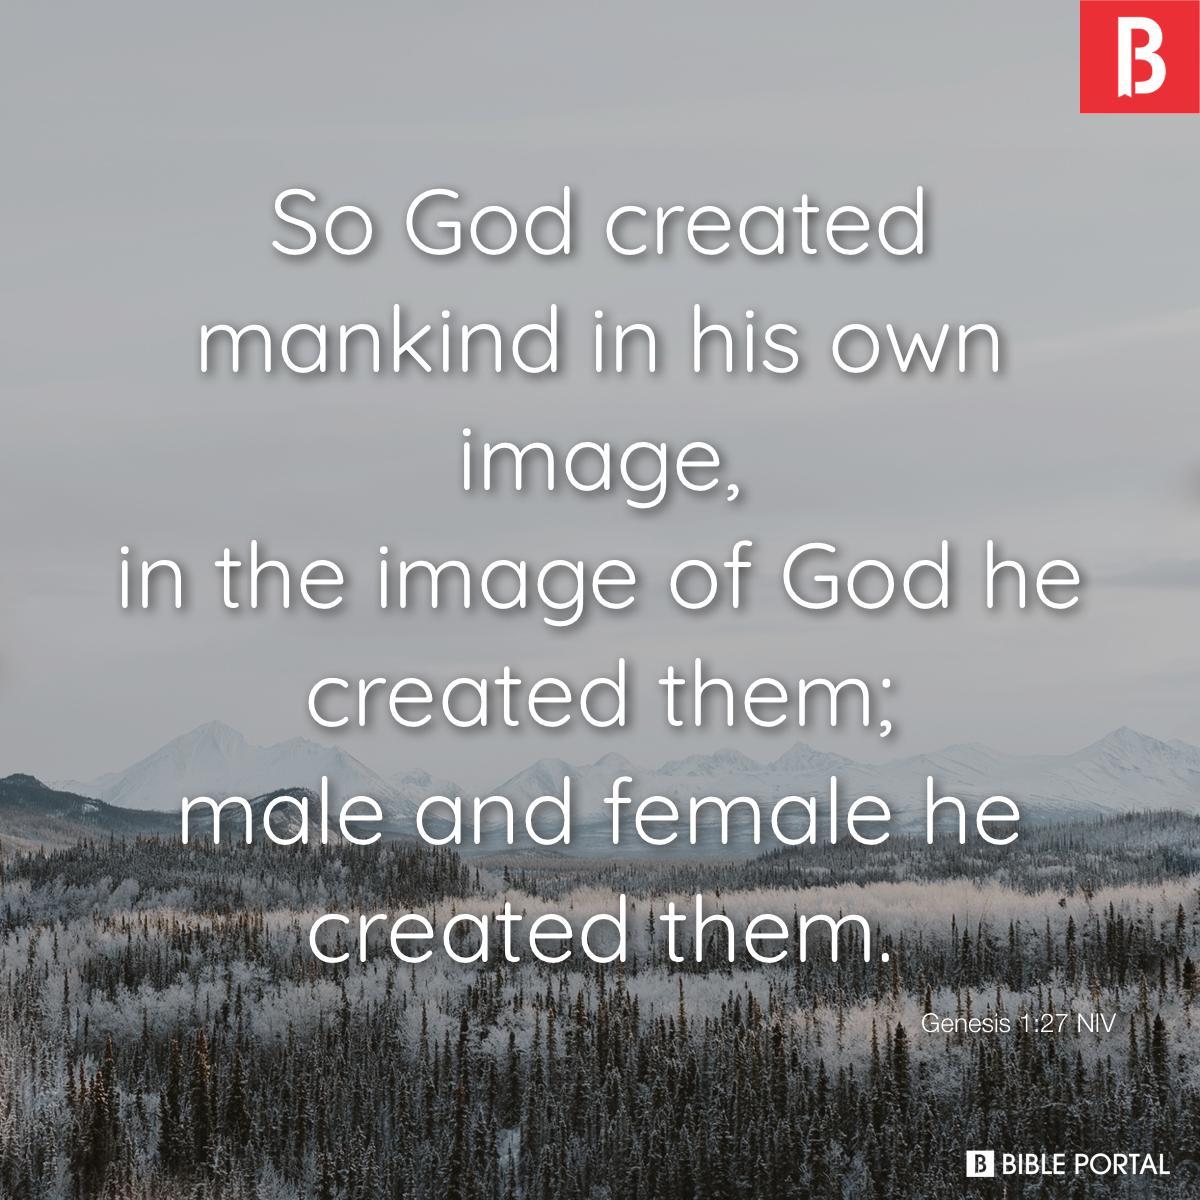 Genesis 1:27 NIV